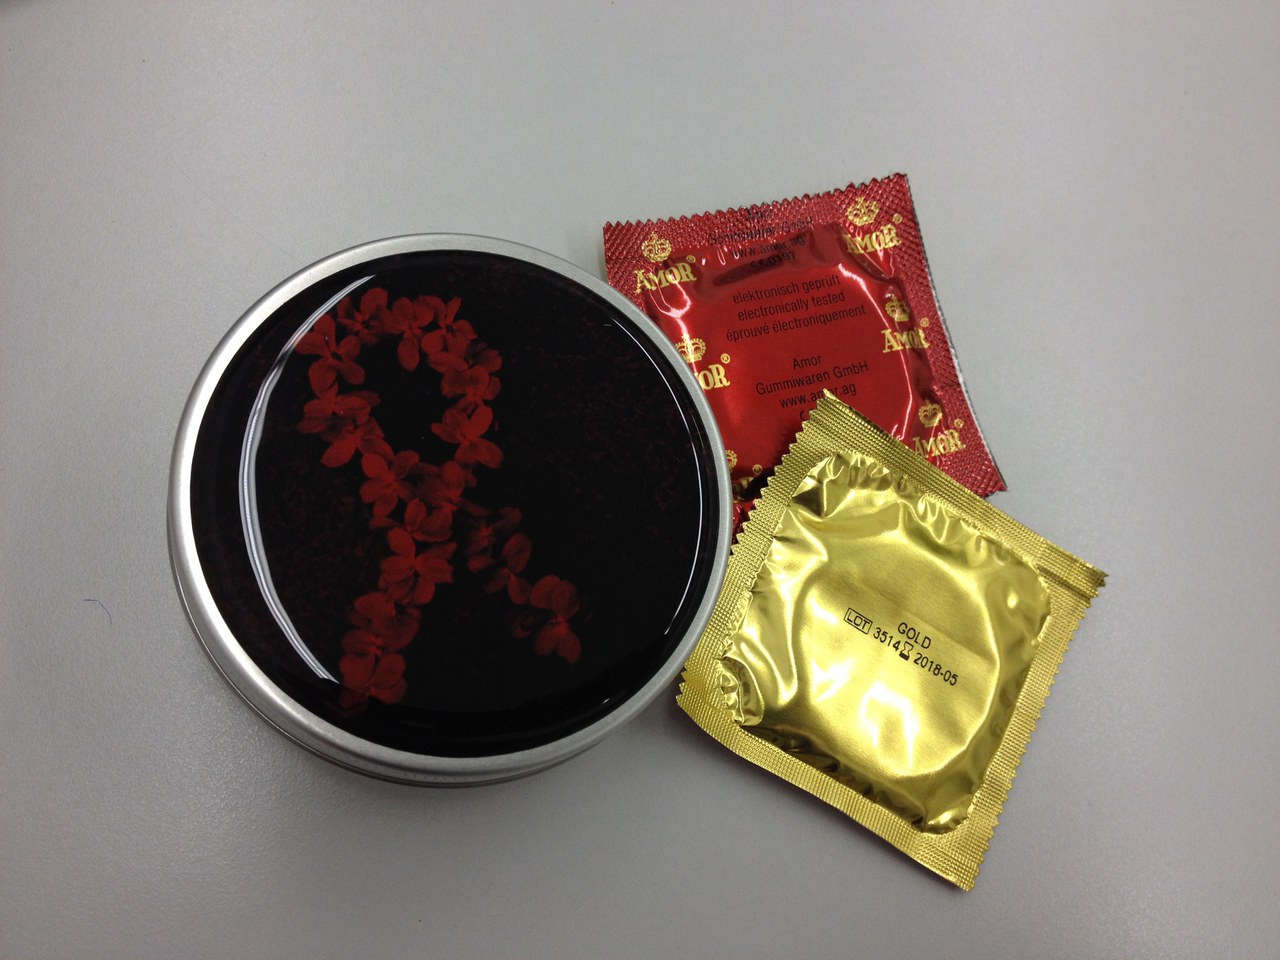 Dose der Aids-Hilfe Zug zum Welt-Aids-Tag mit zwei Kondomen und Gleitmittel konfektioniert.